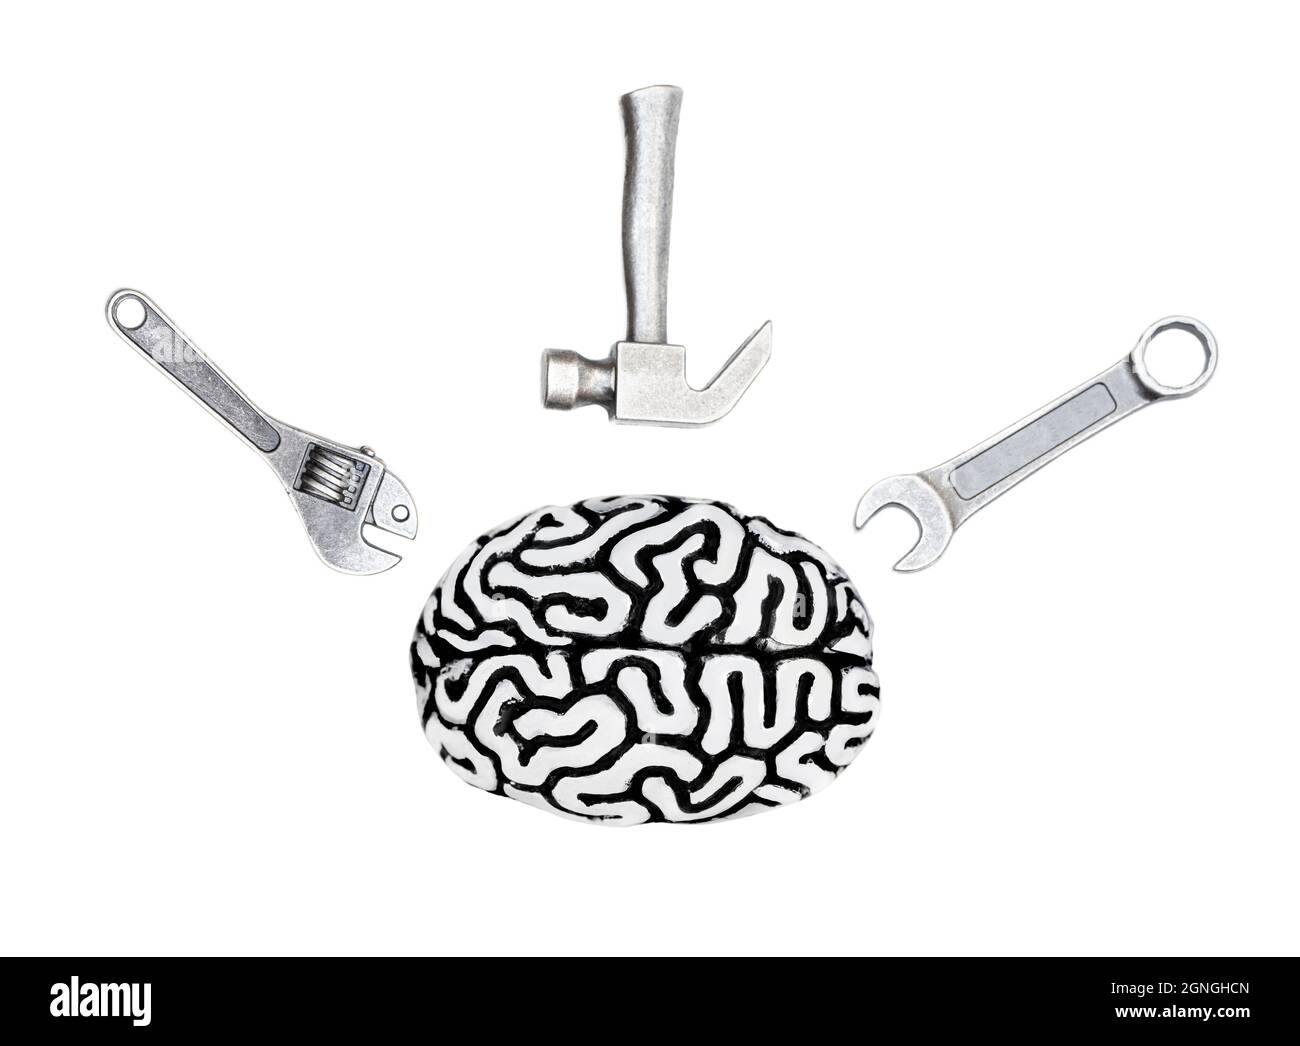 Draufsicht auf ein menschliches Gehirnmodell mit einem Satz von Handwerkzeugen, die auf Weiß isoliert sind. Kreatives Konzept für Tools zur Gehirnwiederherstellung. Stockfoto